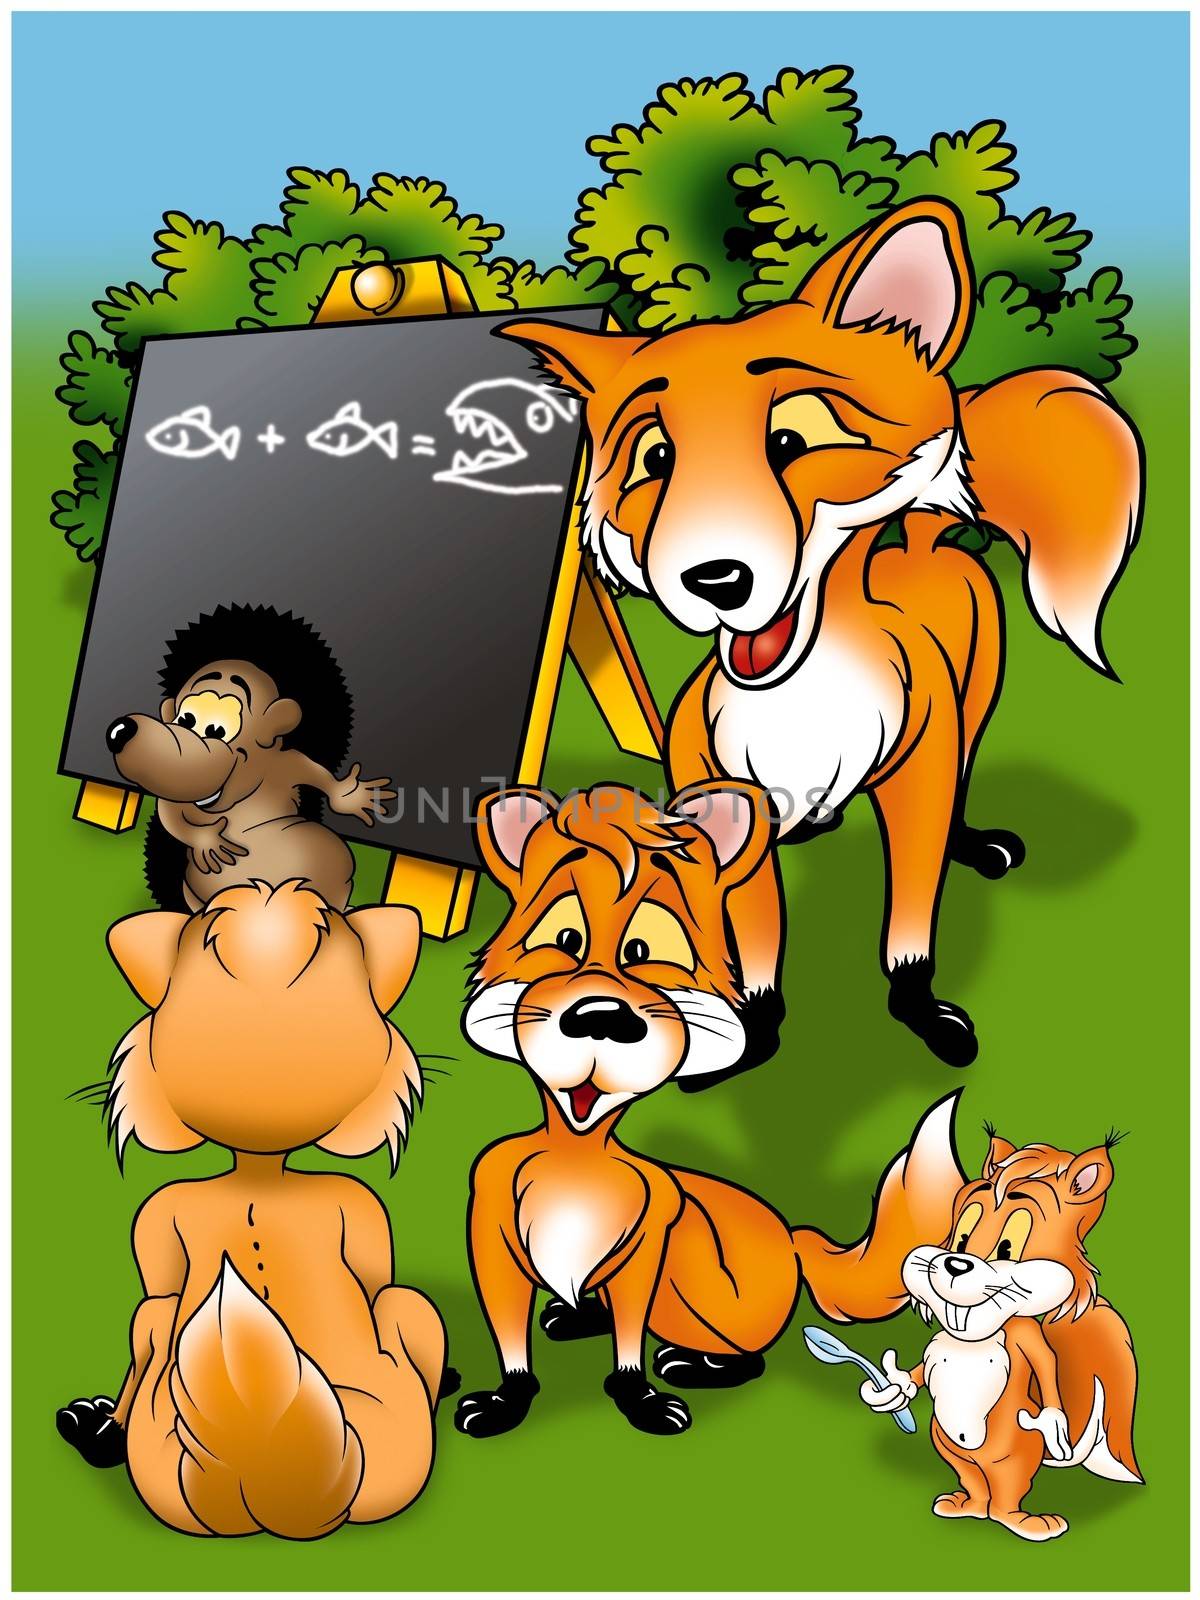 Foxes in School by illustratorCZ